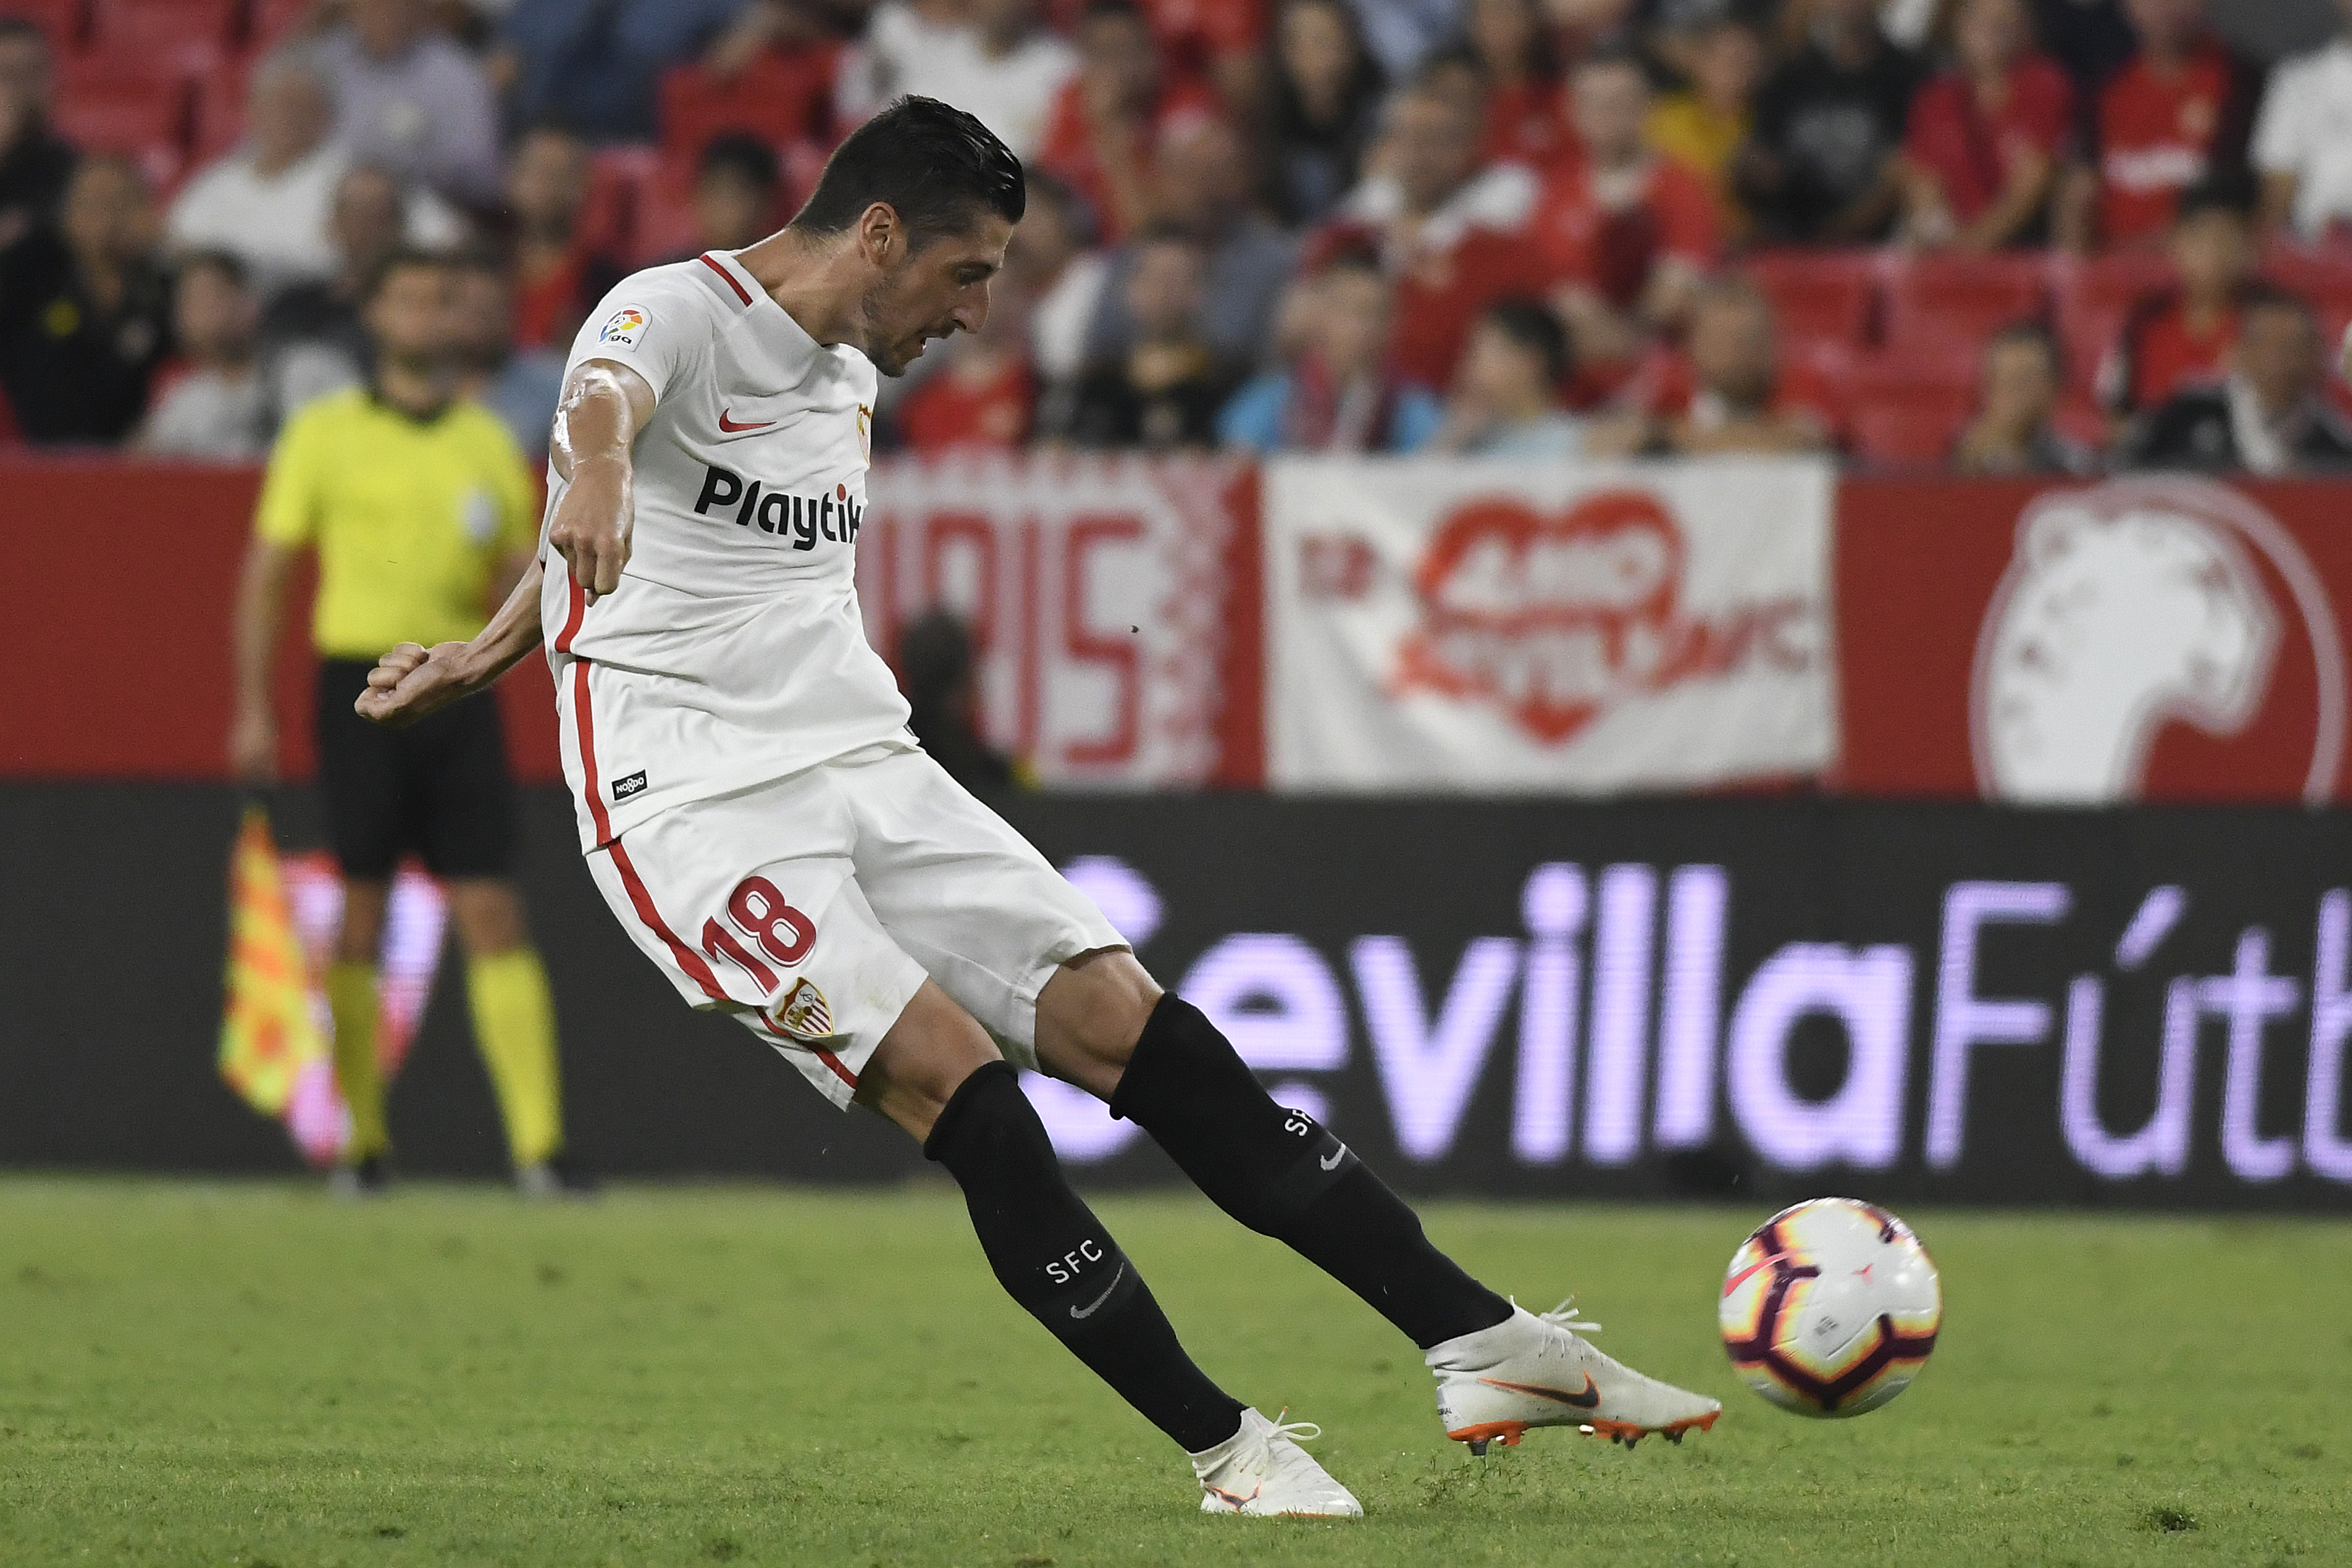 Sergio Escudero, Sevilla FC left-back